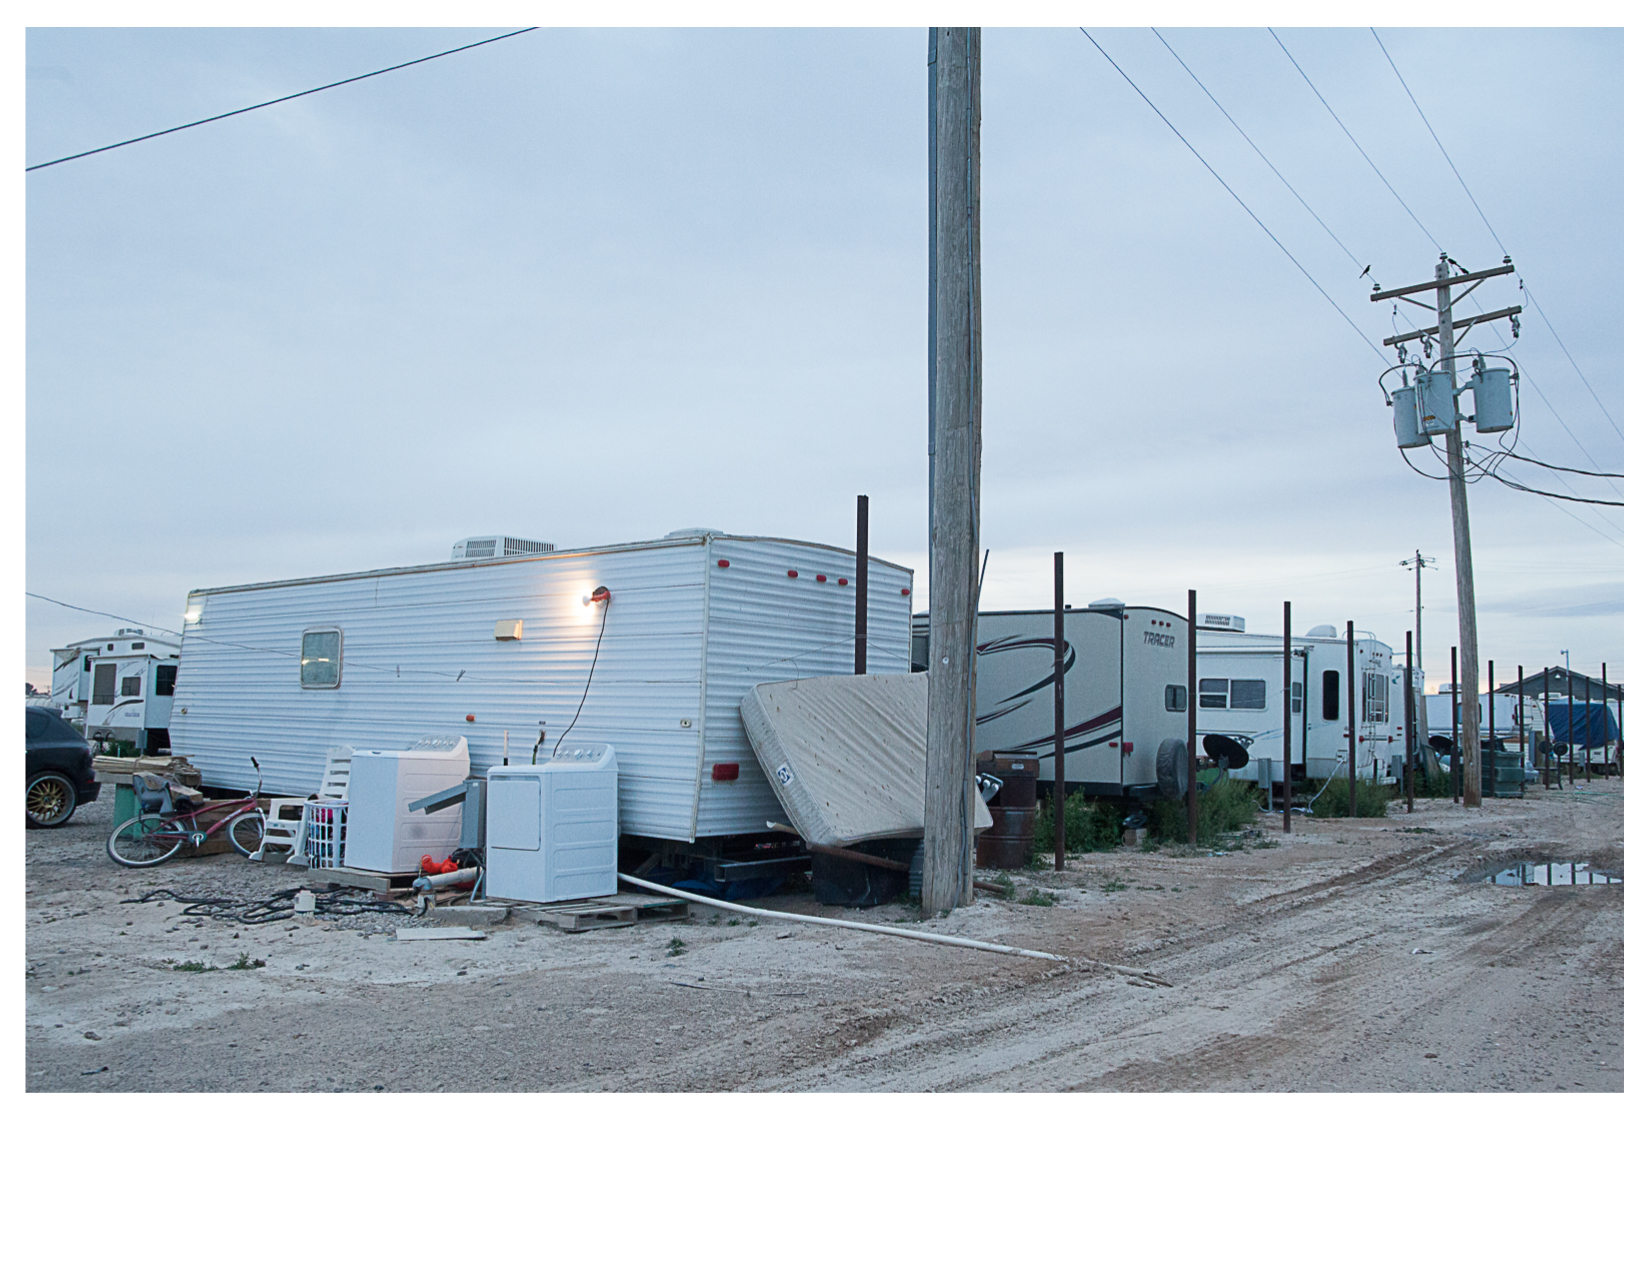 Oilfield Worker's Camp, Pecos, TX